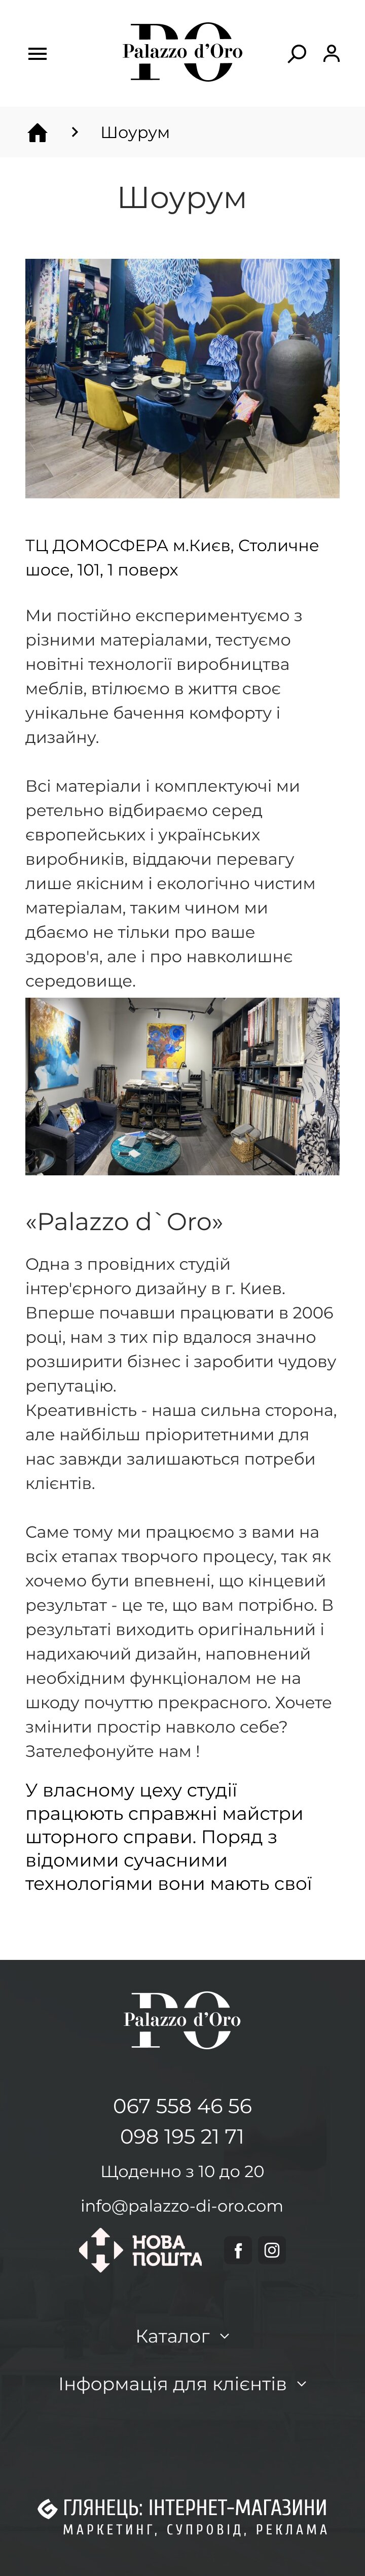 ™ Глянець, студія веб-дизайну — Інтернет-магазин Palazzo-di-oro_27